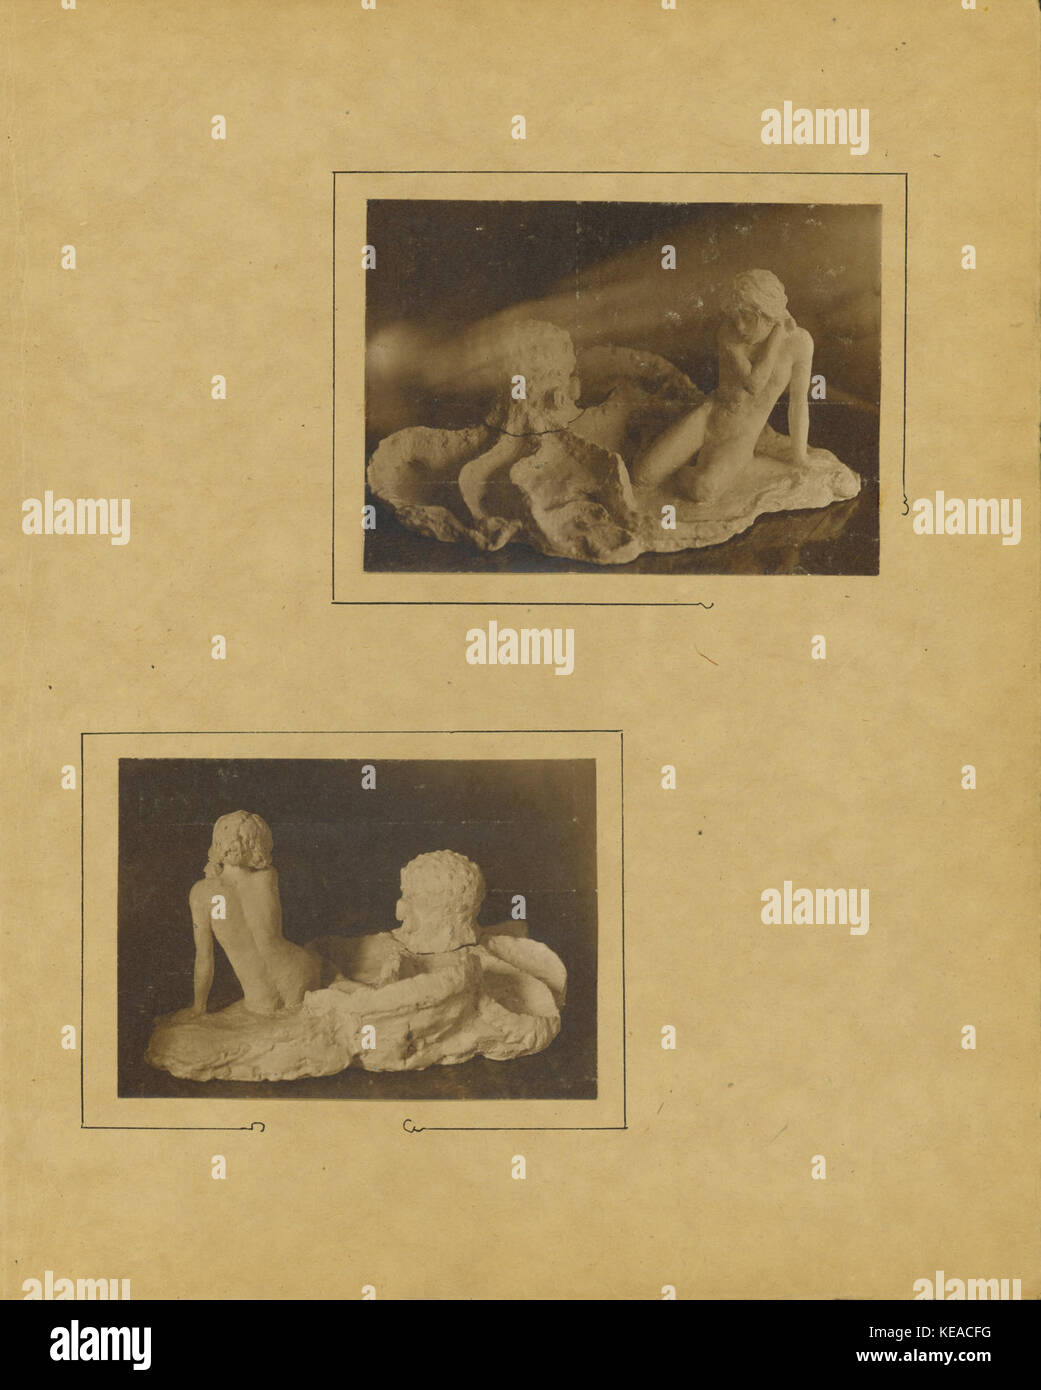 Stand d'encre en terre cuite (Fille avec Octopus), des sculptures de Caroline risque avec des photographies par Williamina Parrish, page 2 Banque D'Images